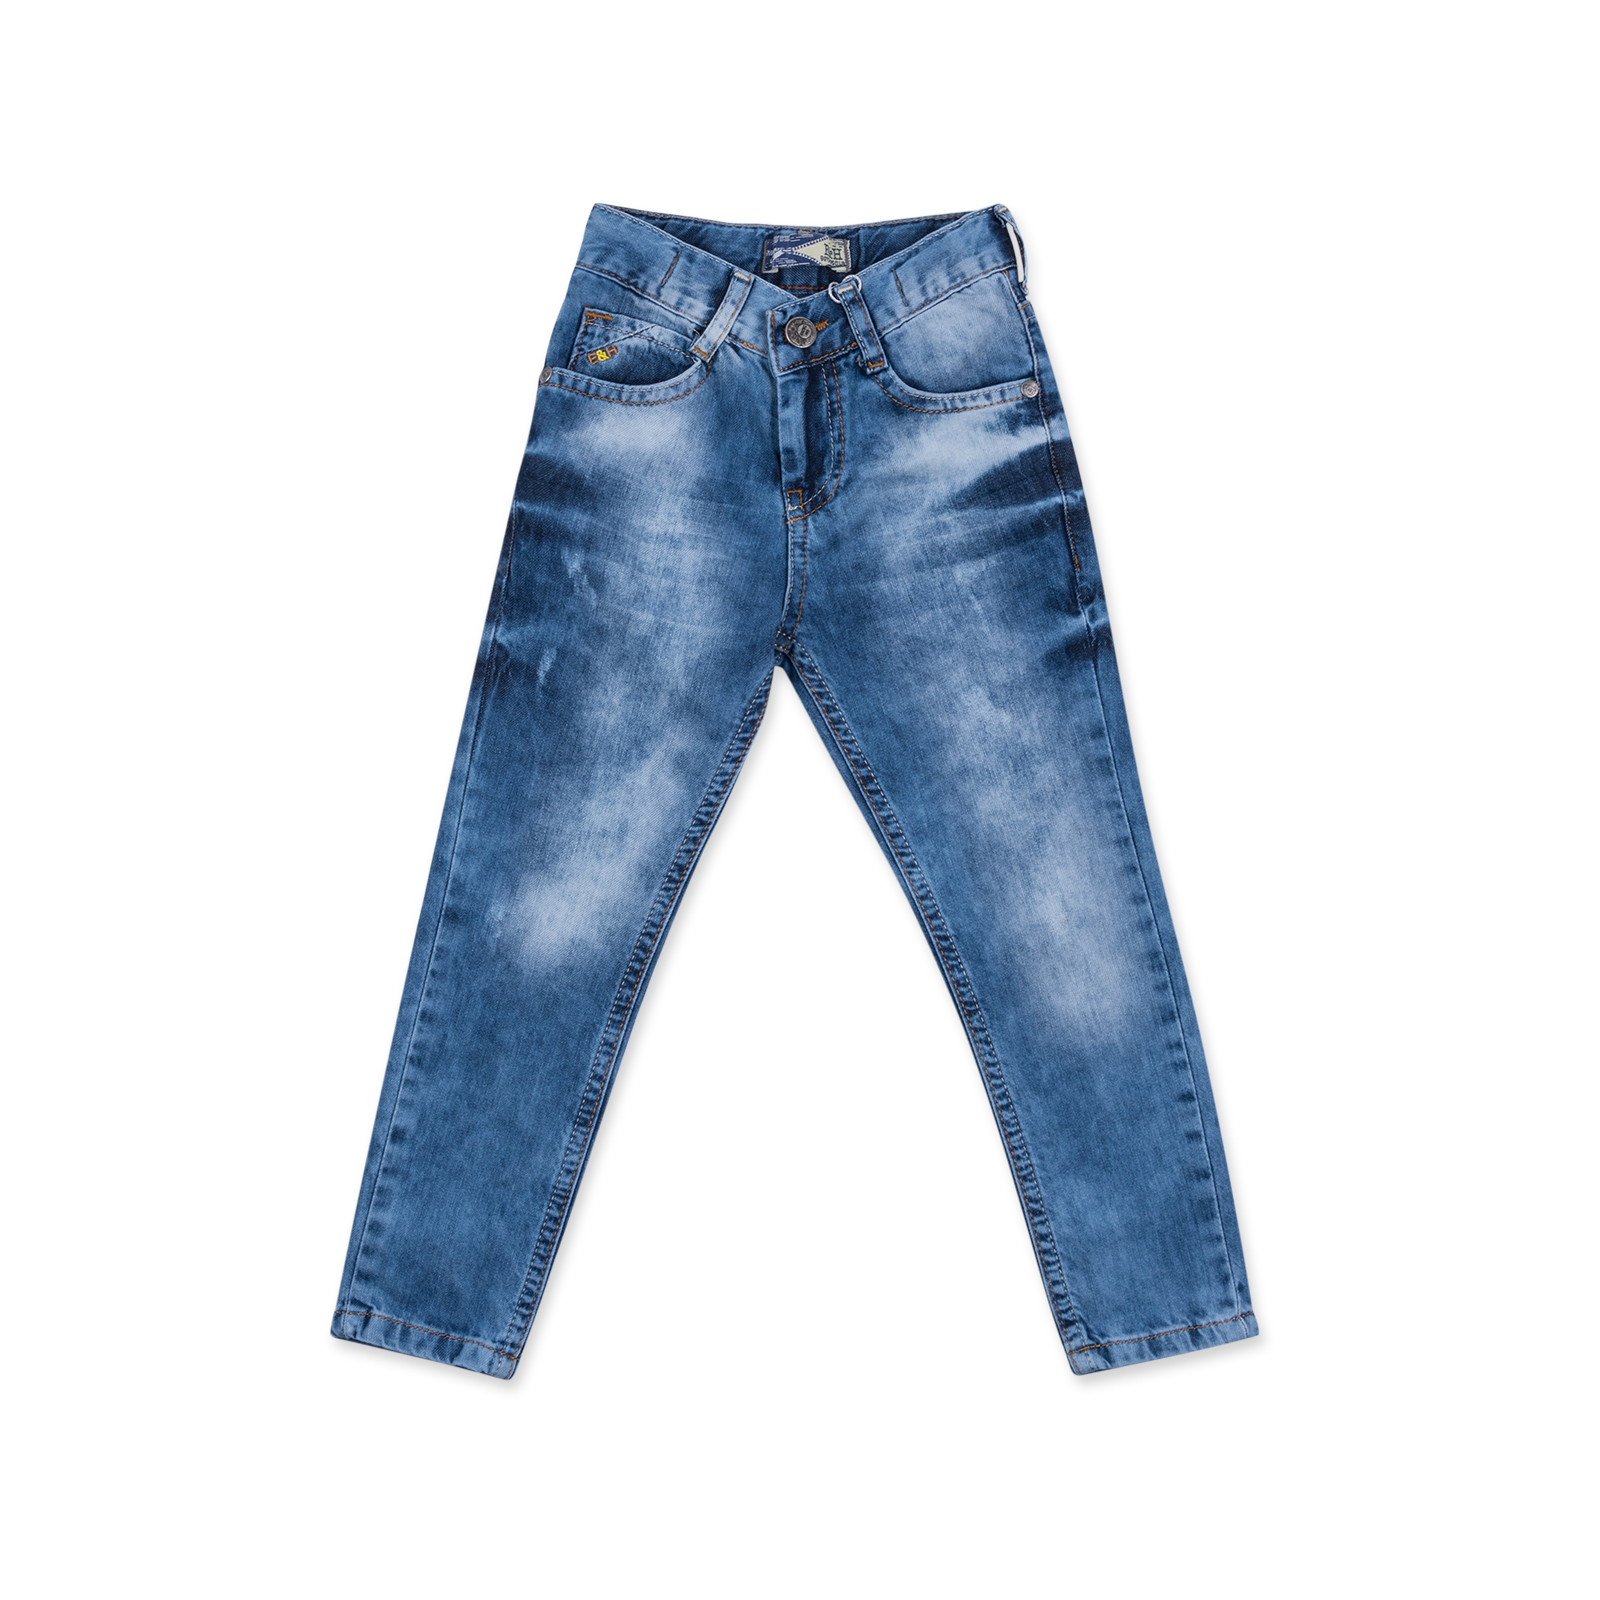 Джинсы Breeze с потертостями (20072-110B-jeans)